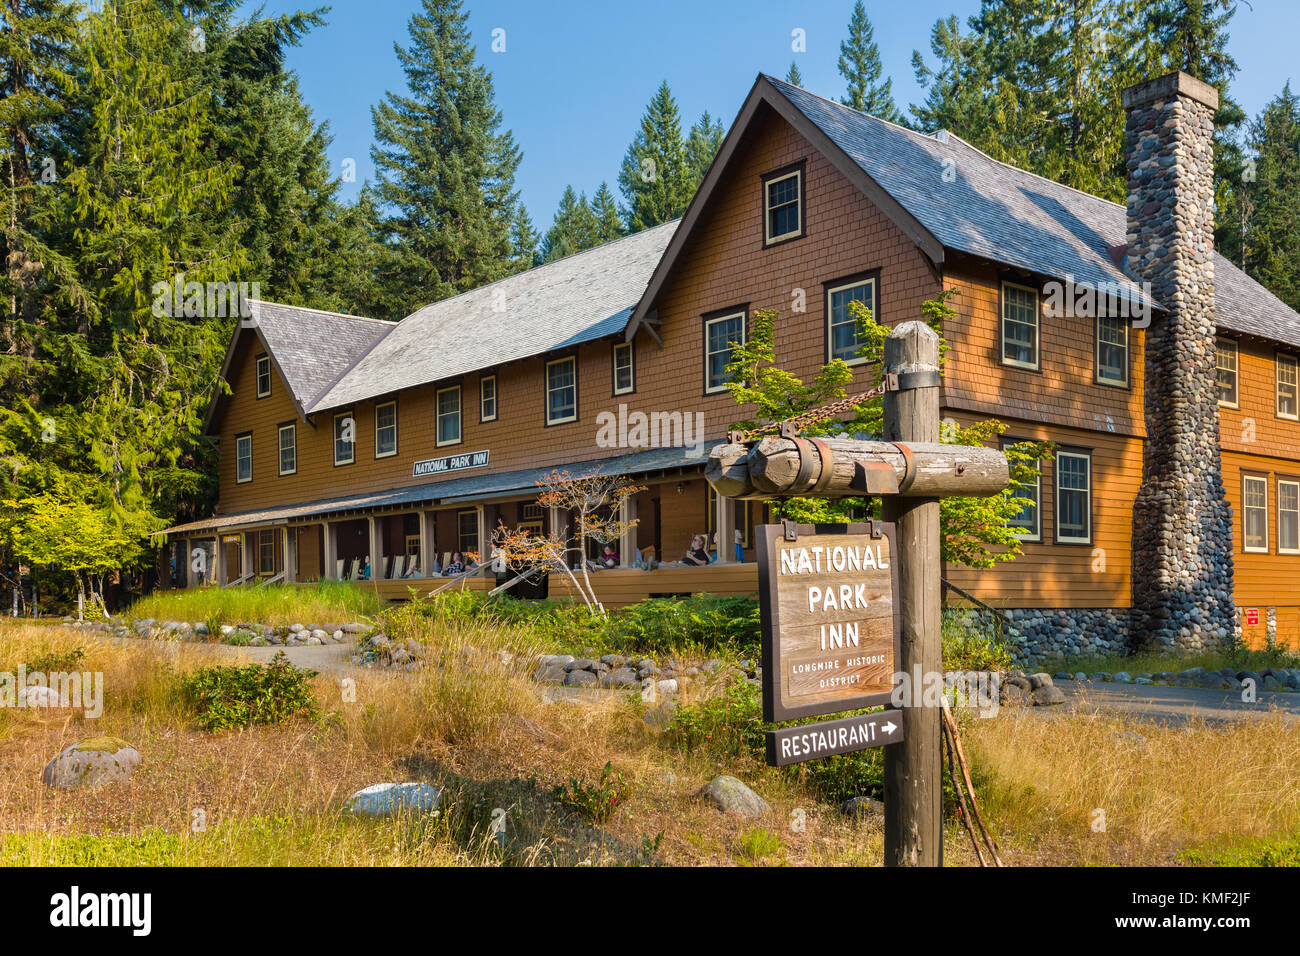 Dans le parc national dans le quartier historique de longmire. mt Rainier National Park dans l'état de Washington aux États-Unis Banque D'Images